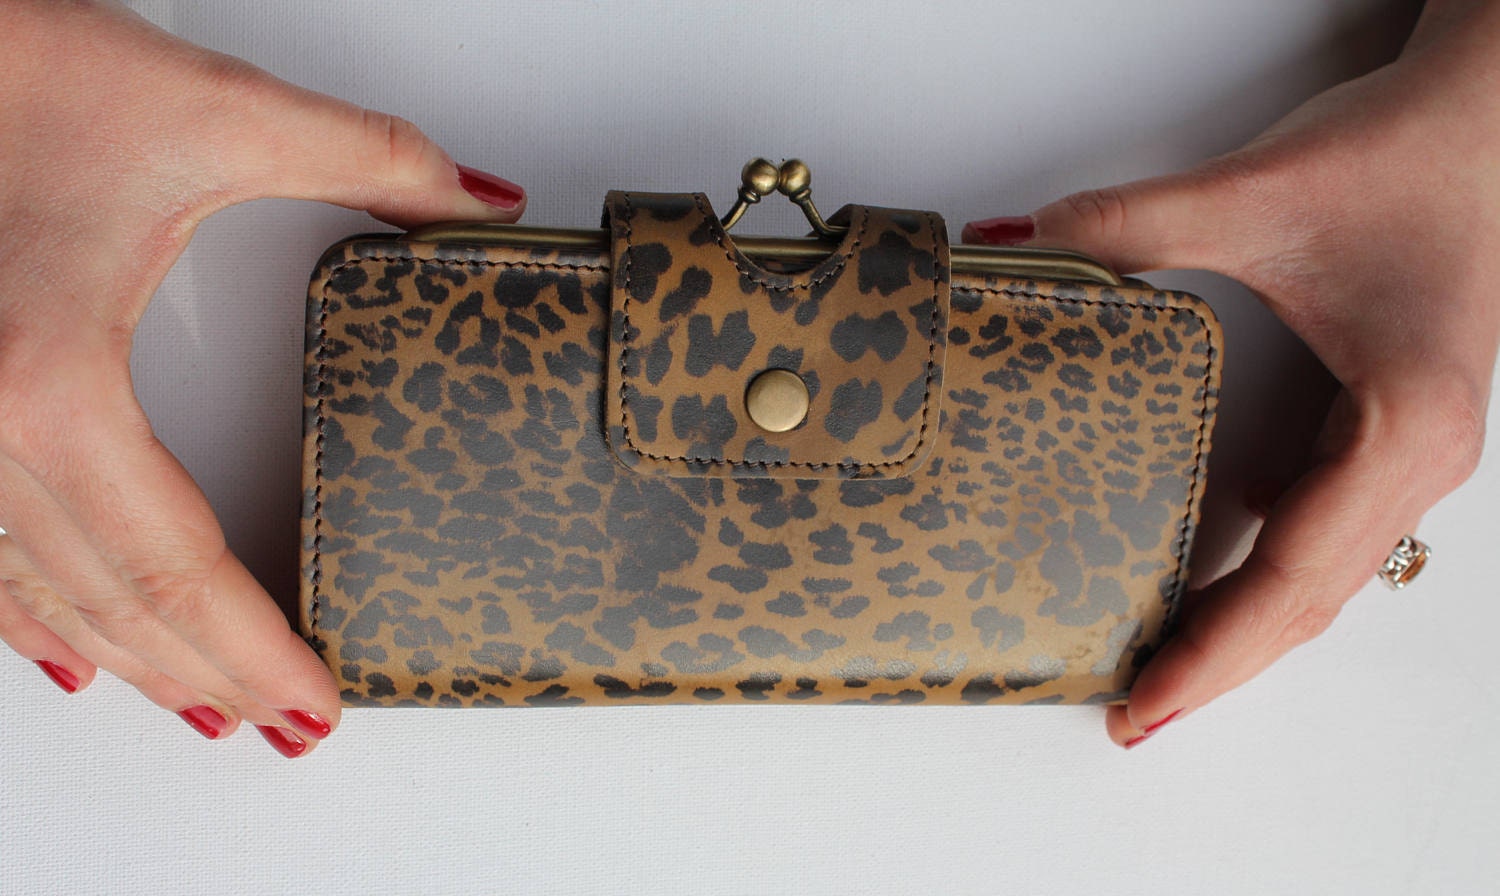 lv leopard wallet